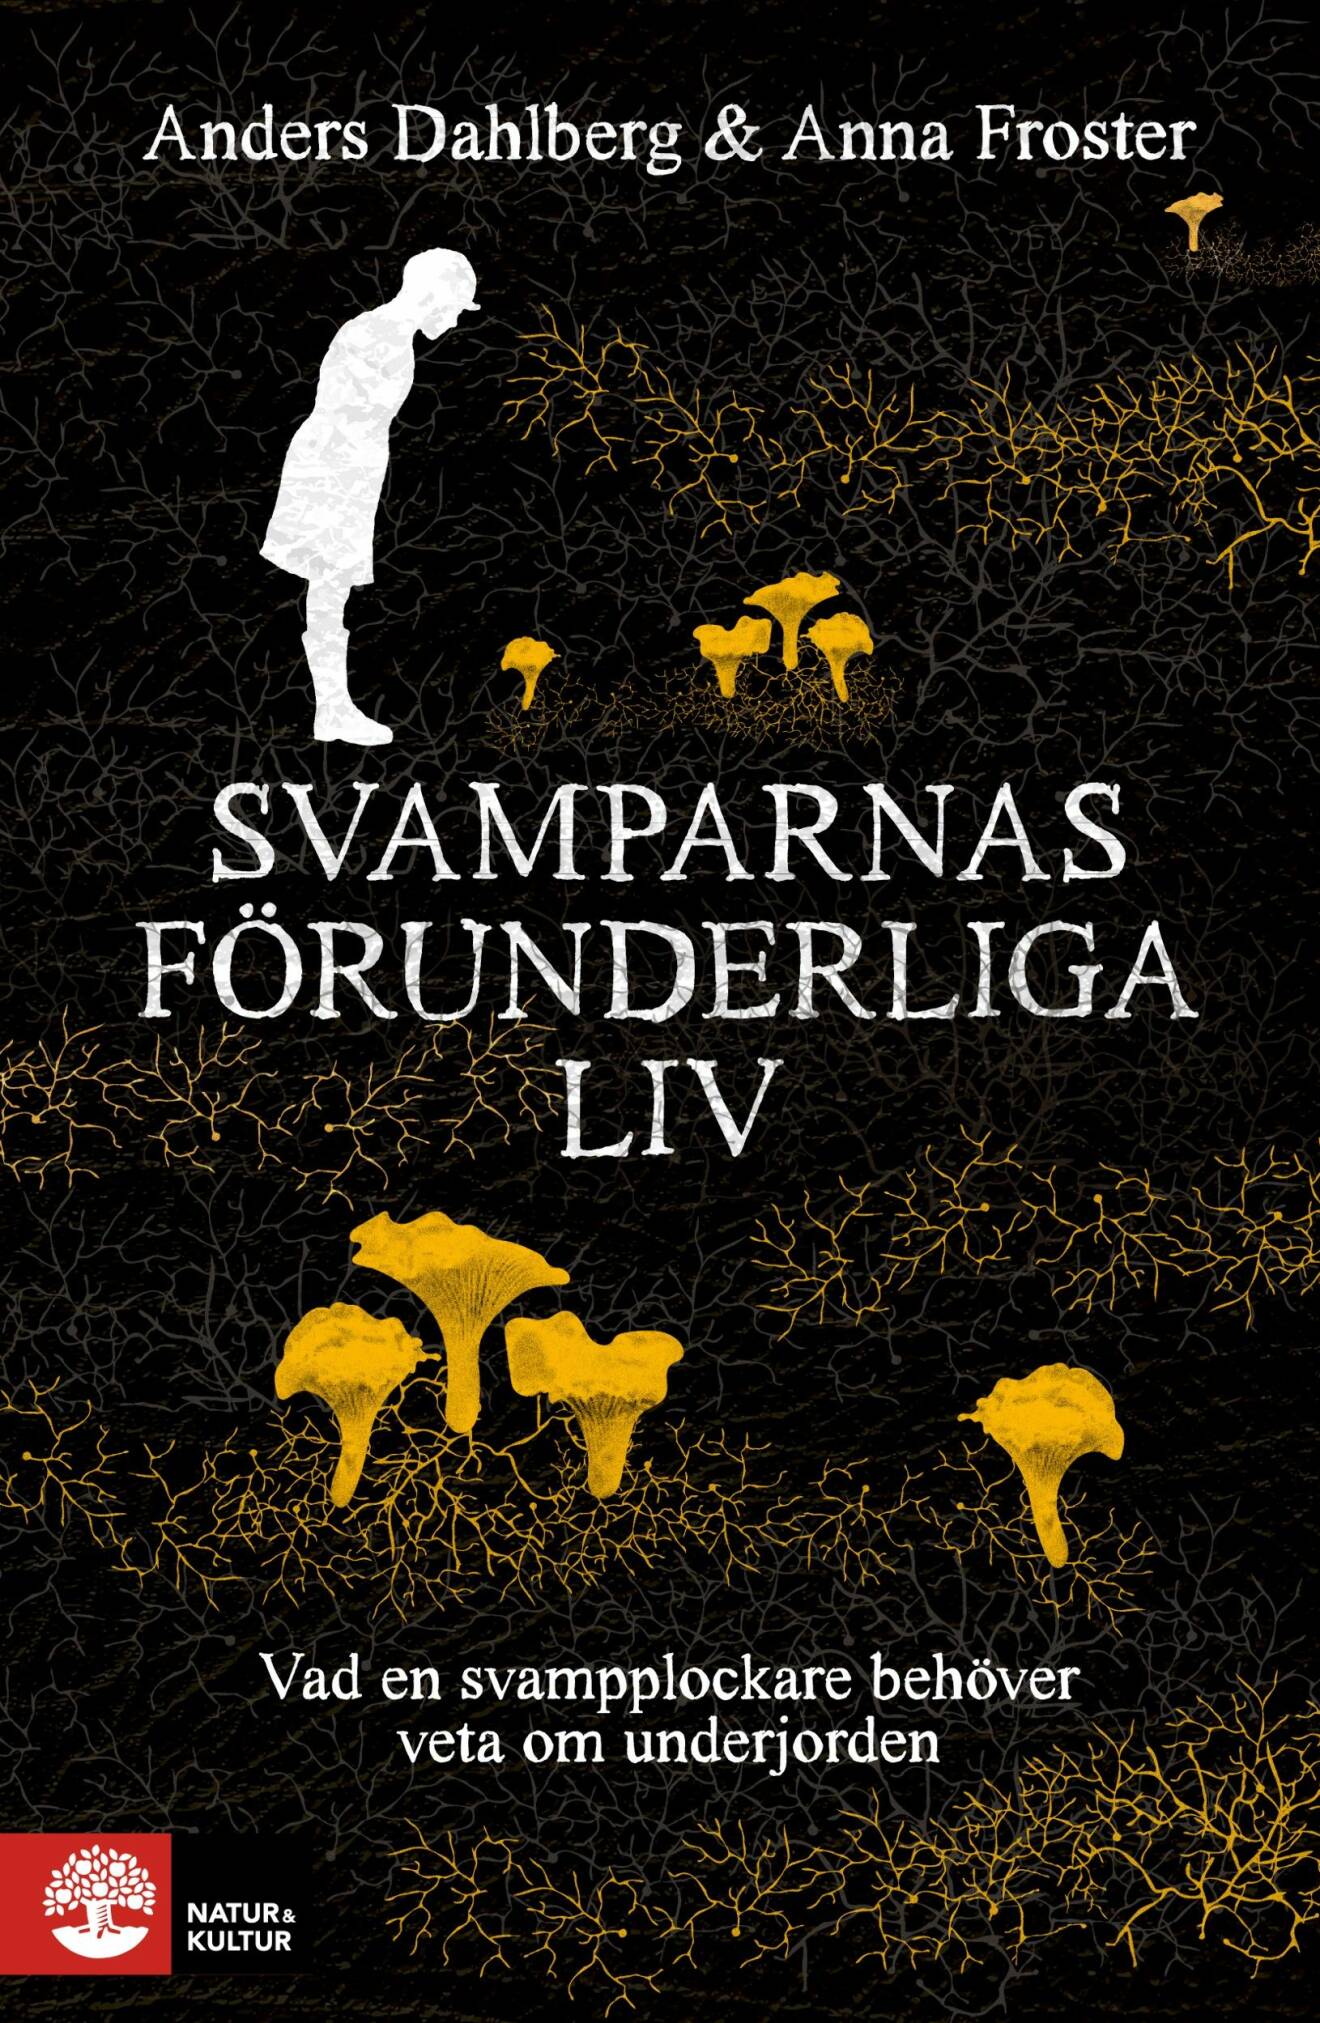 Bokomslag Svamparnas förunderliga liv av Anders Dahlberg och Anna Froster